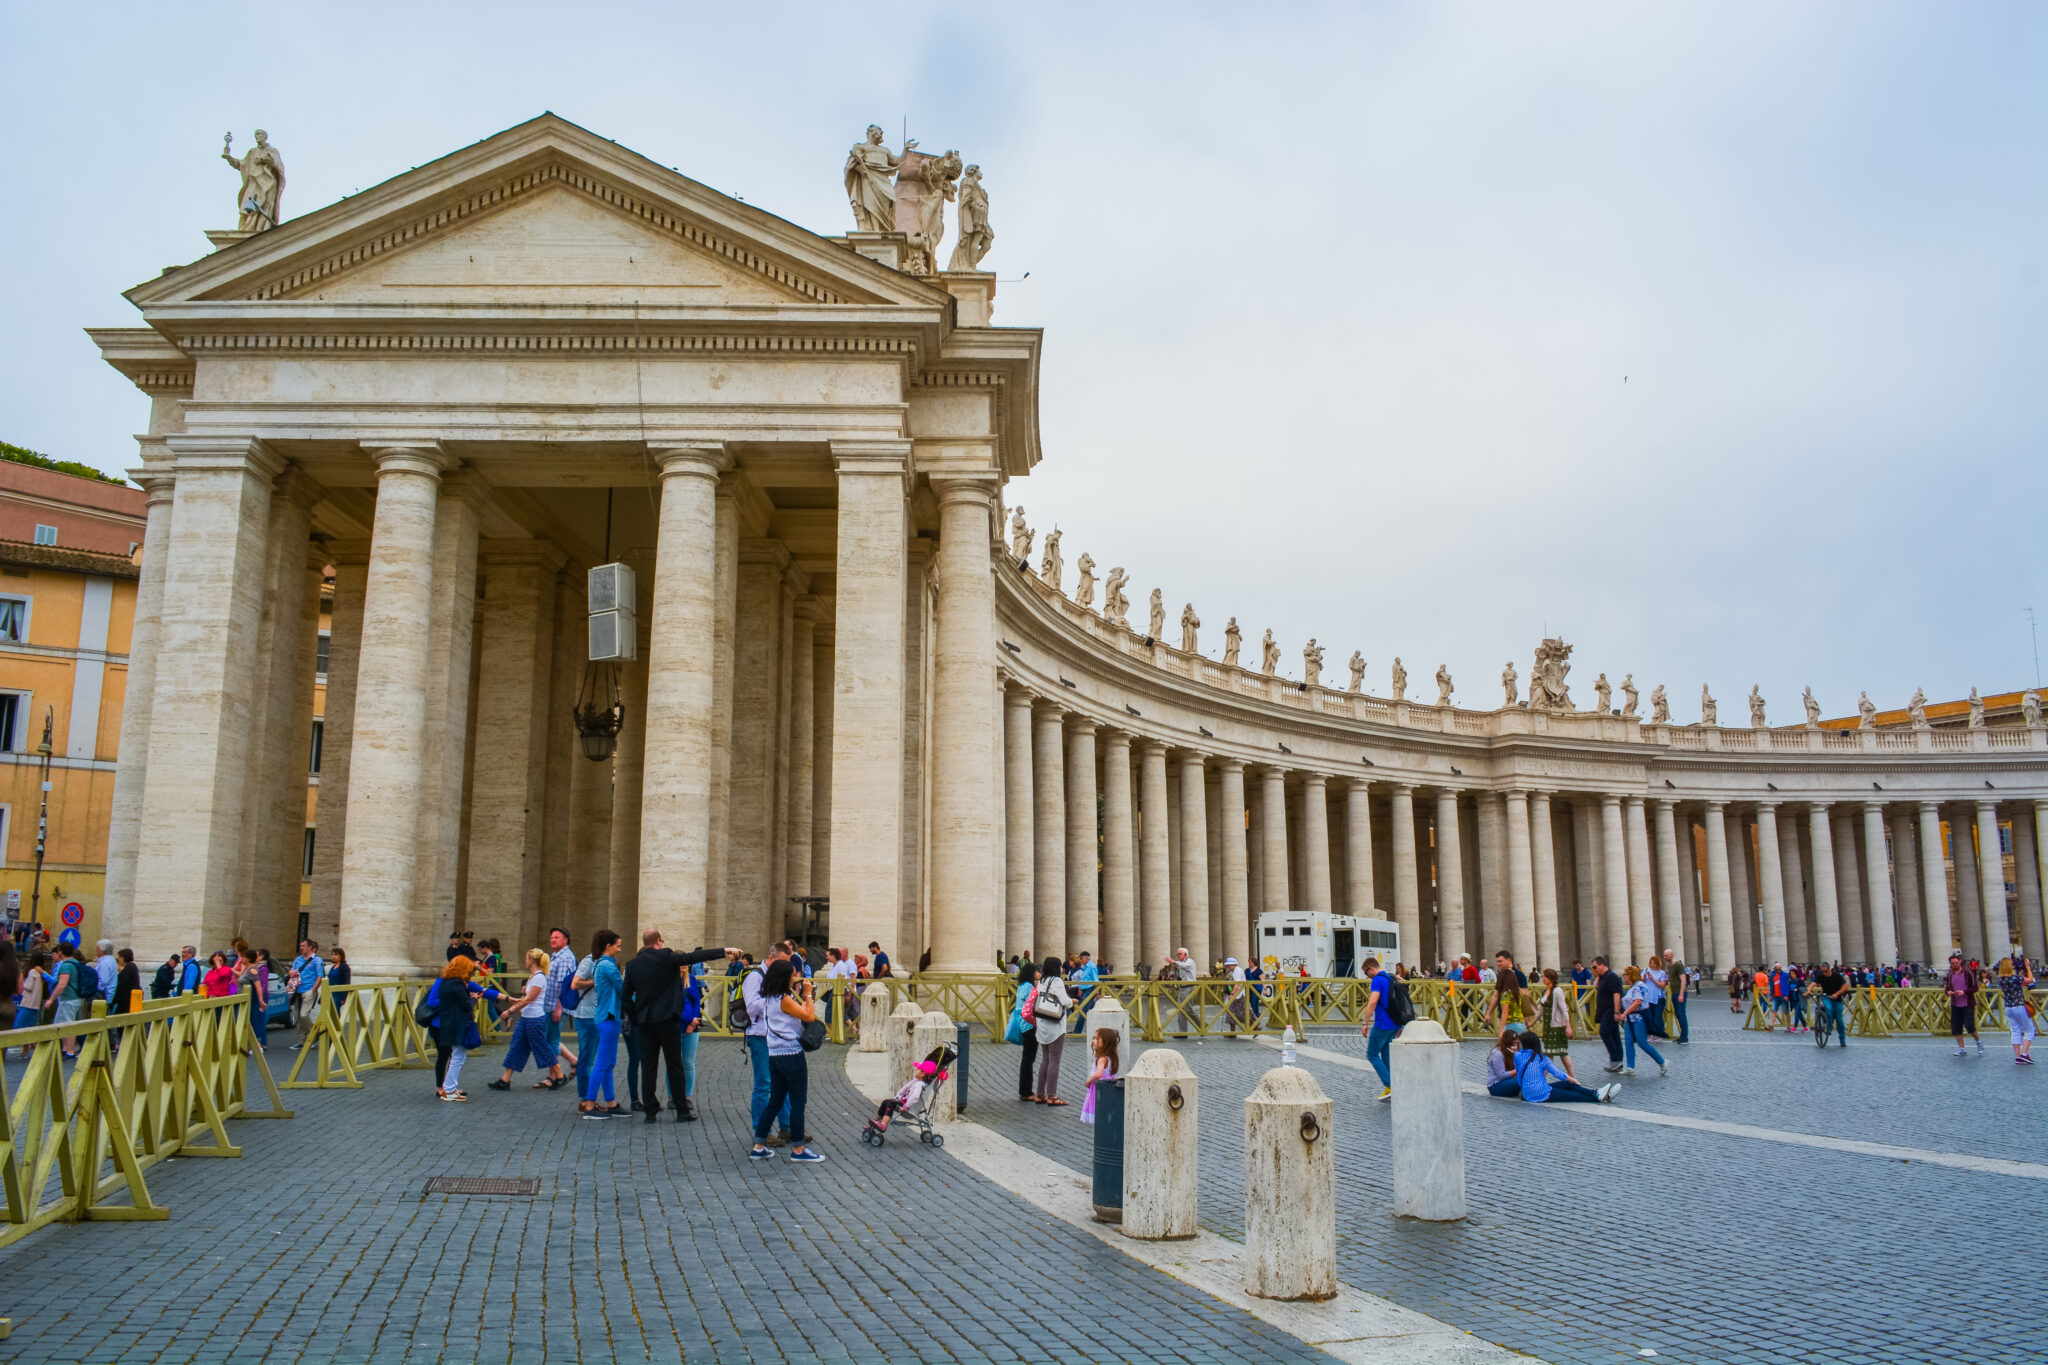 DSC 0116 2 scaled - Como visitar a Necrópole do Vaticano